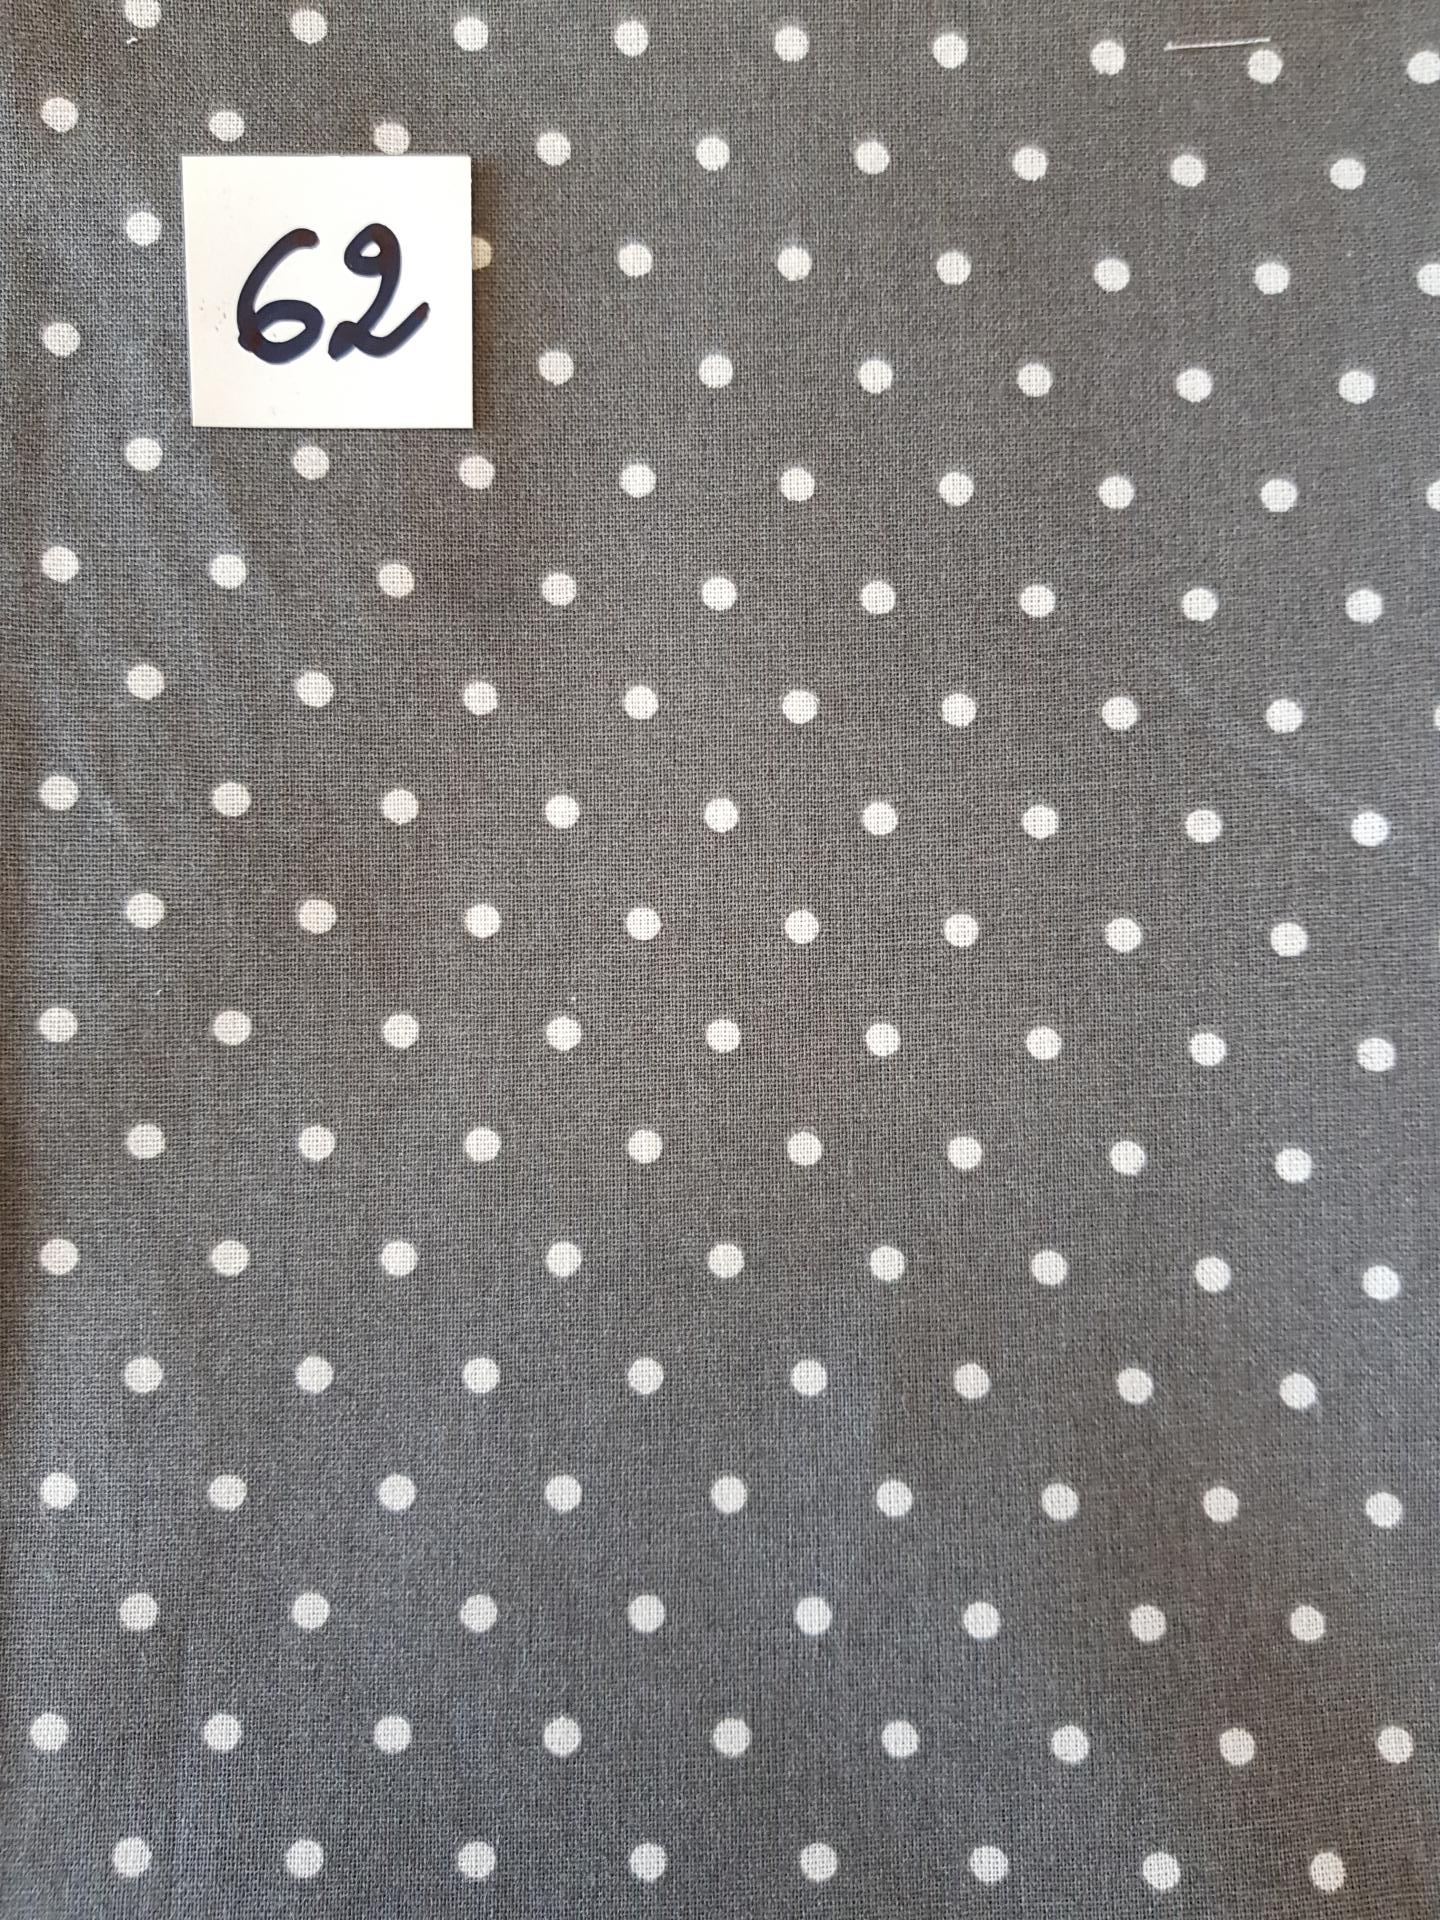 62 tissus lingettes motif pois gris 62